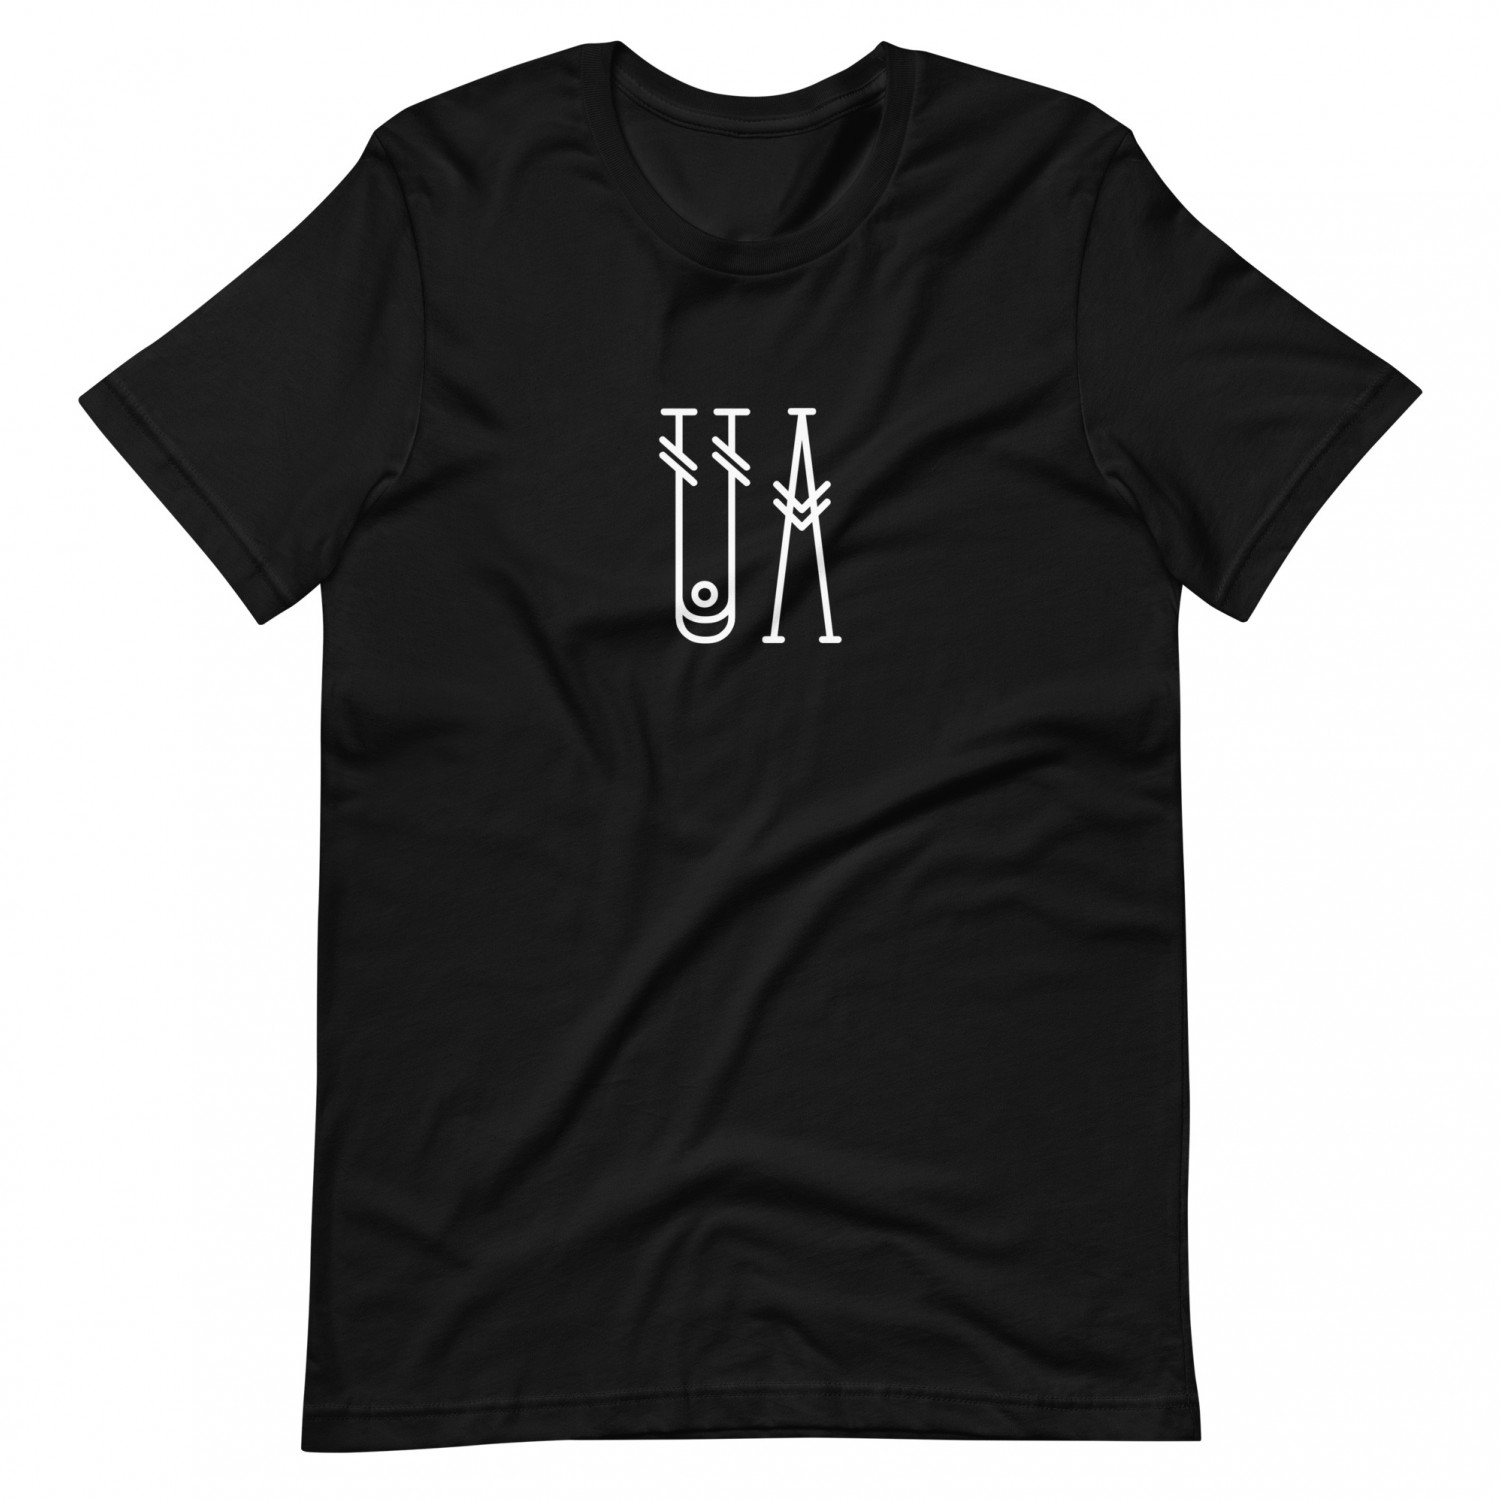 T-shirt "UA"